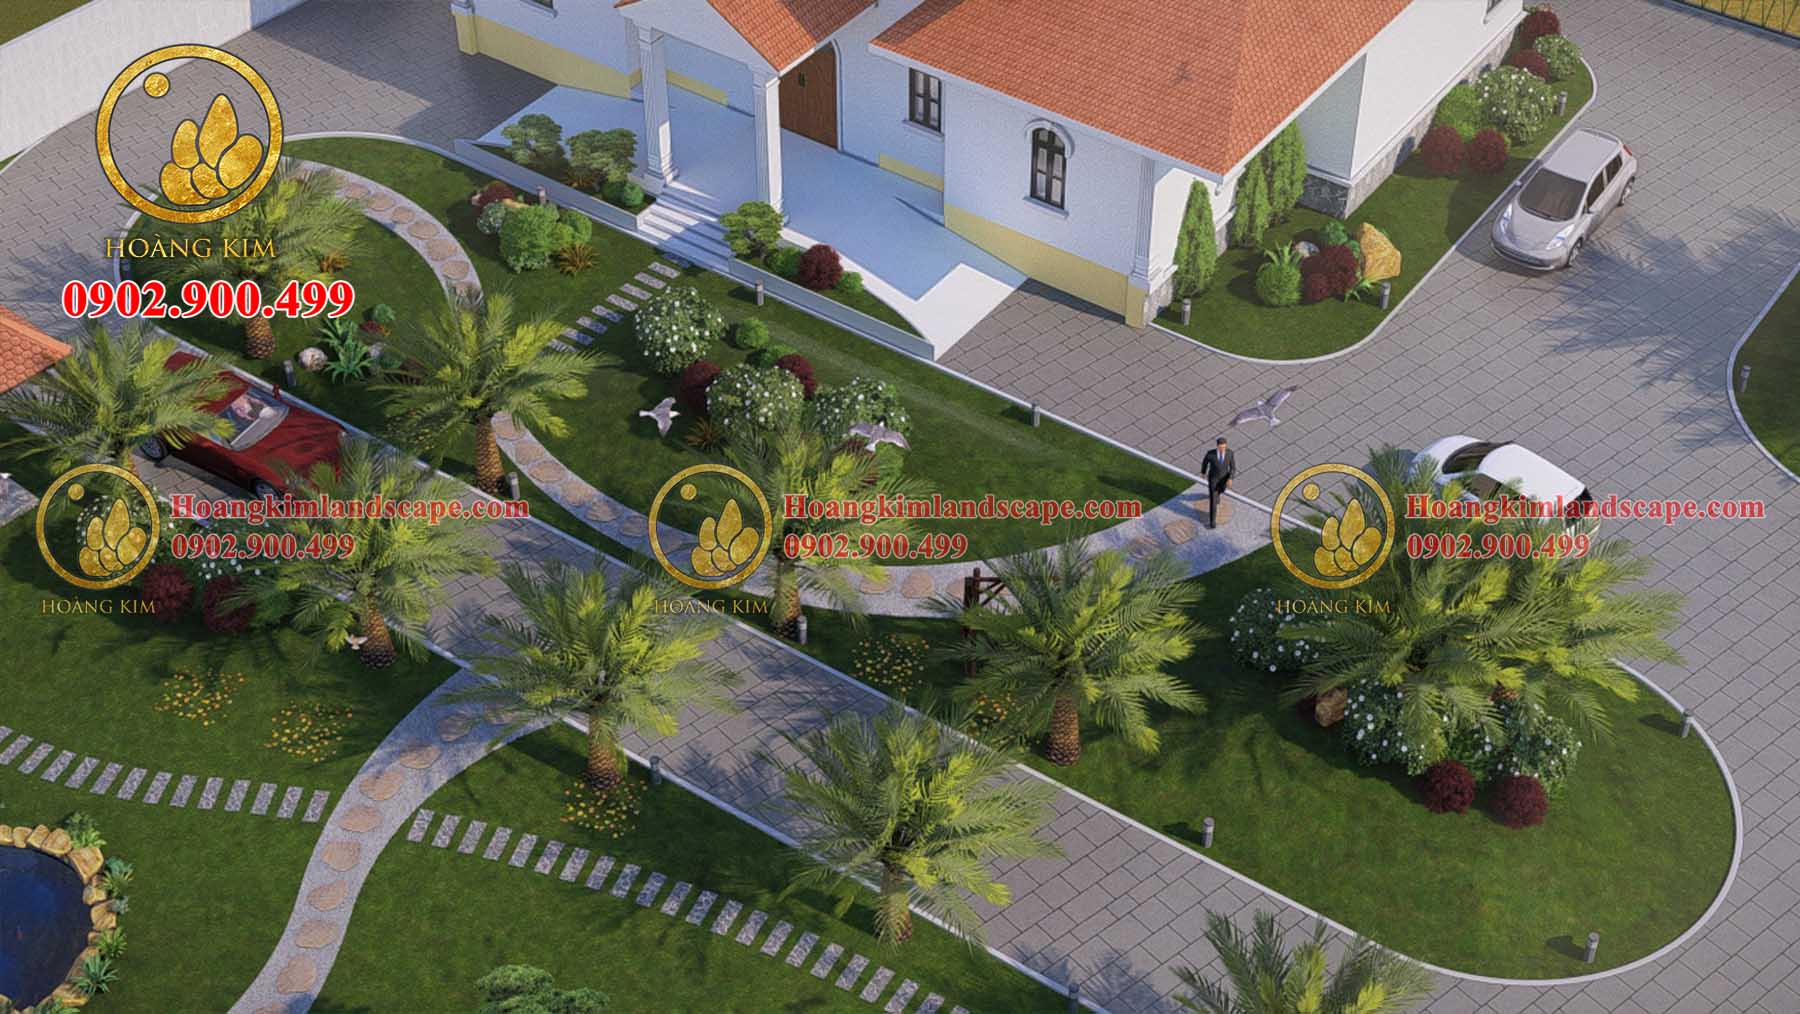 Cảnh quan trước nhà được thiết kế như một công viên mini